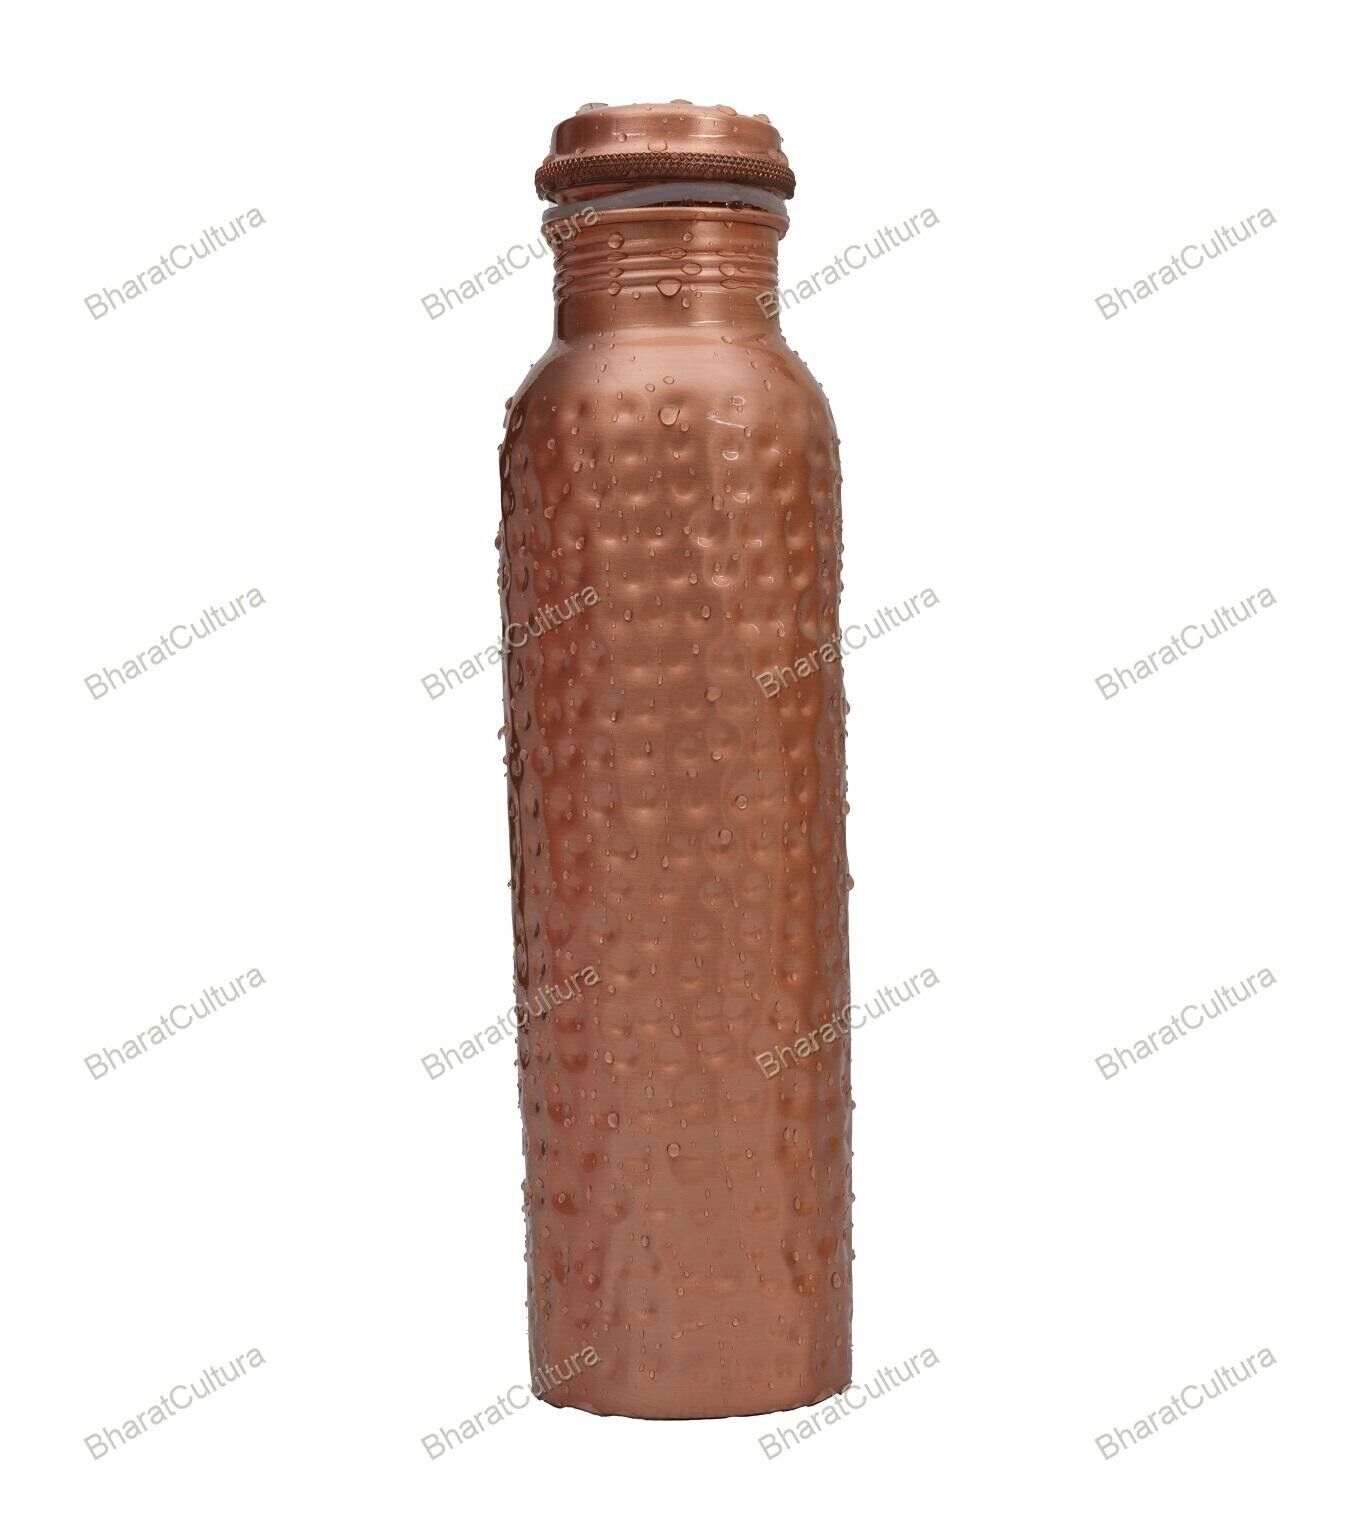 Hammered Bottle Design Joint Free Copper Water Bottle Based 900 ml Hammered